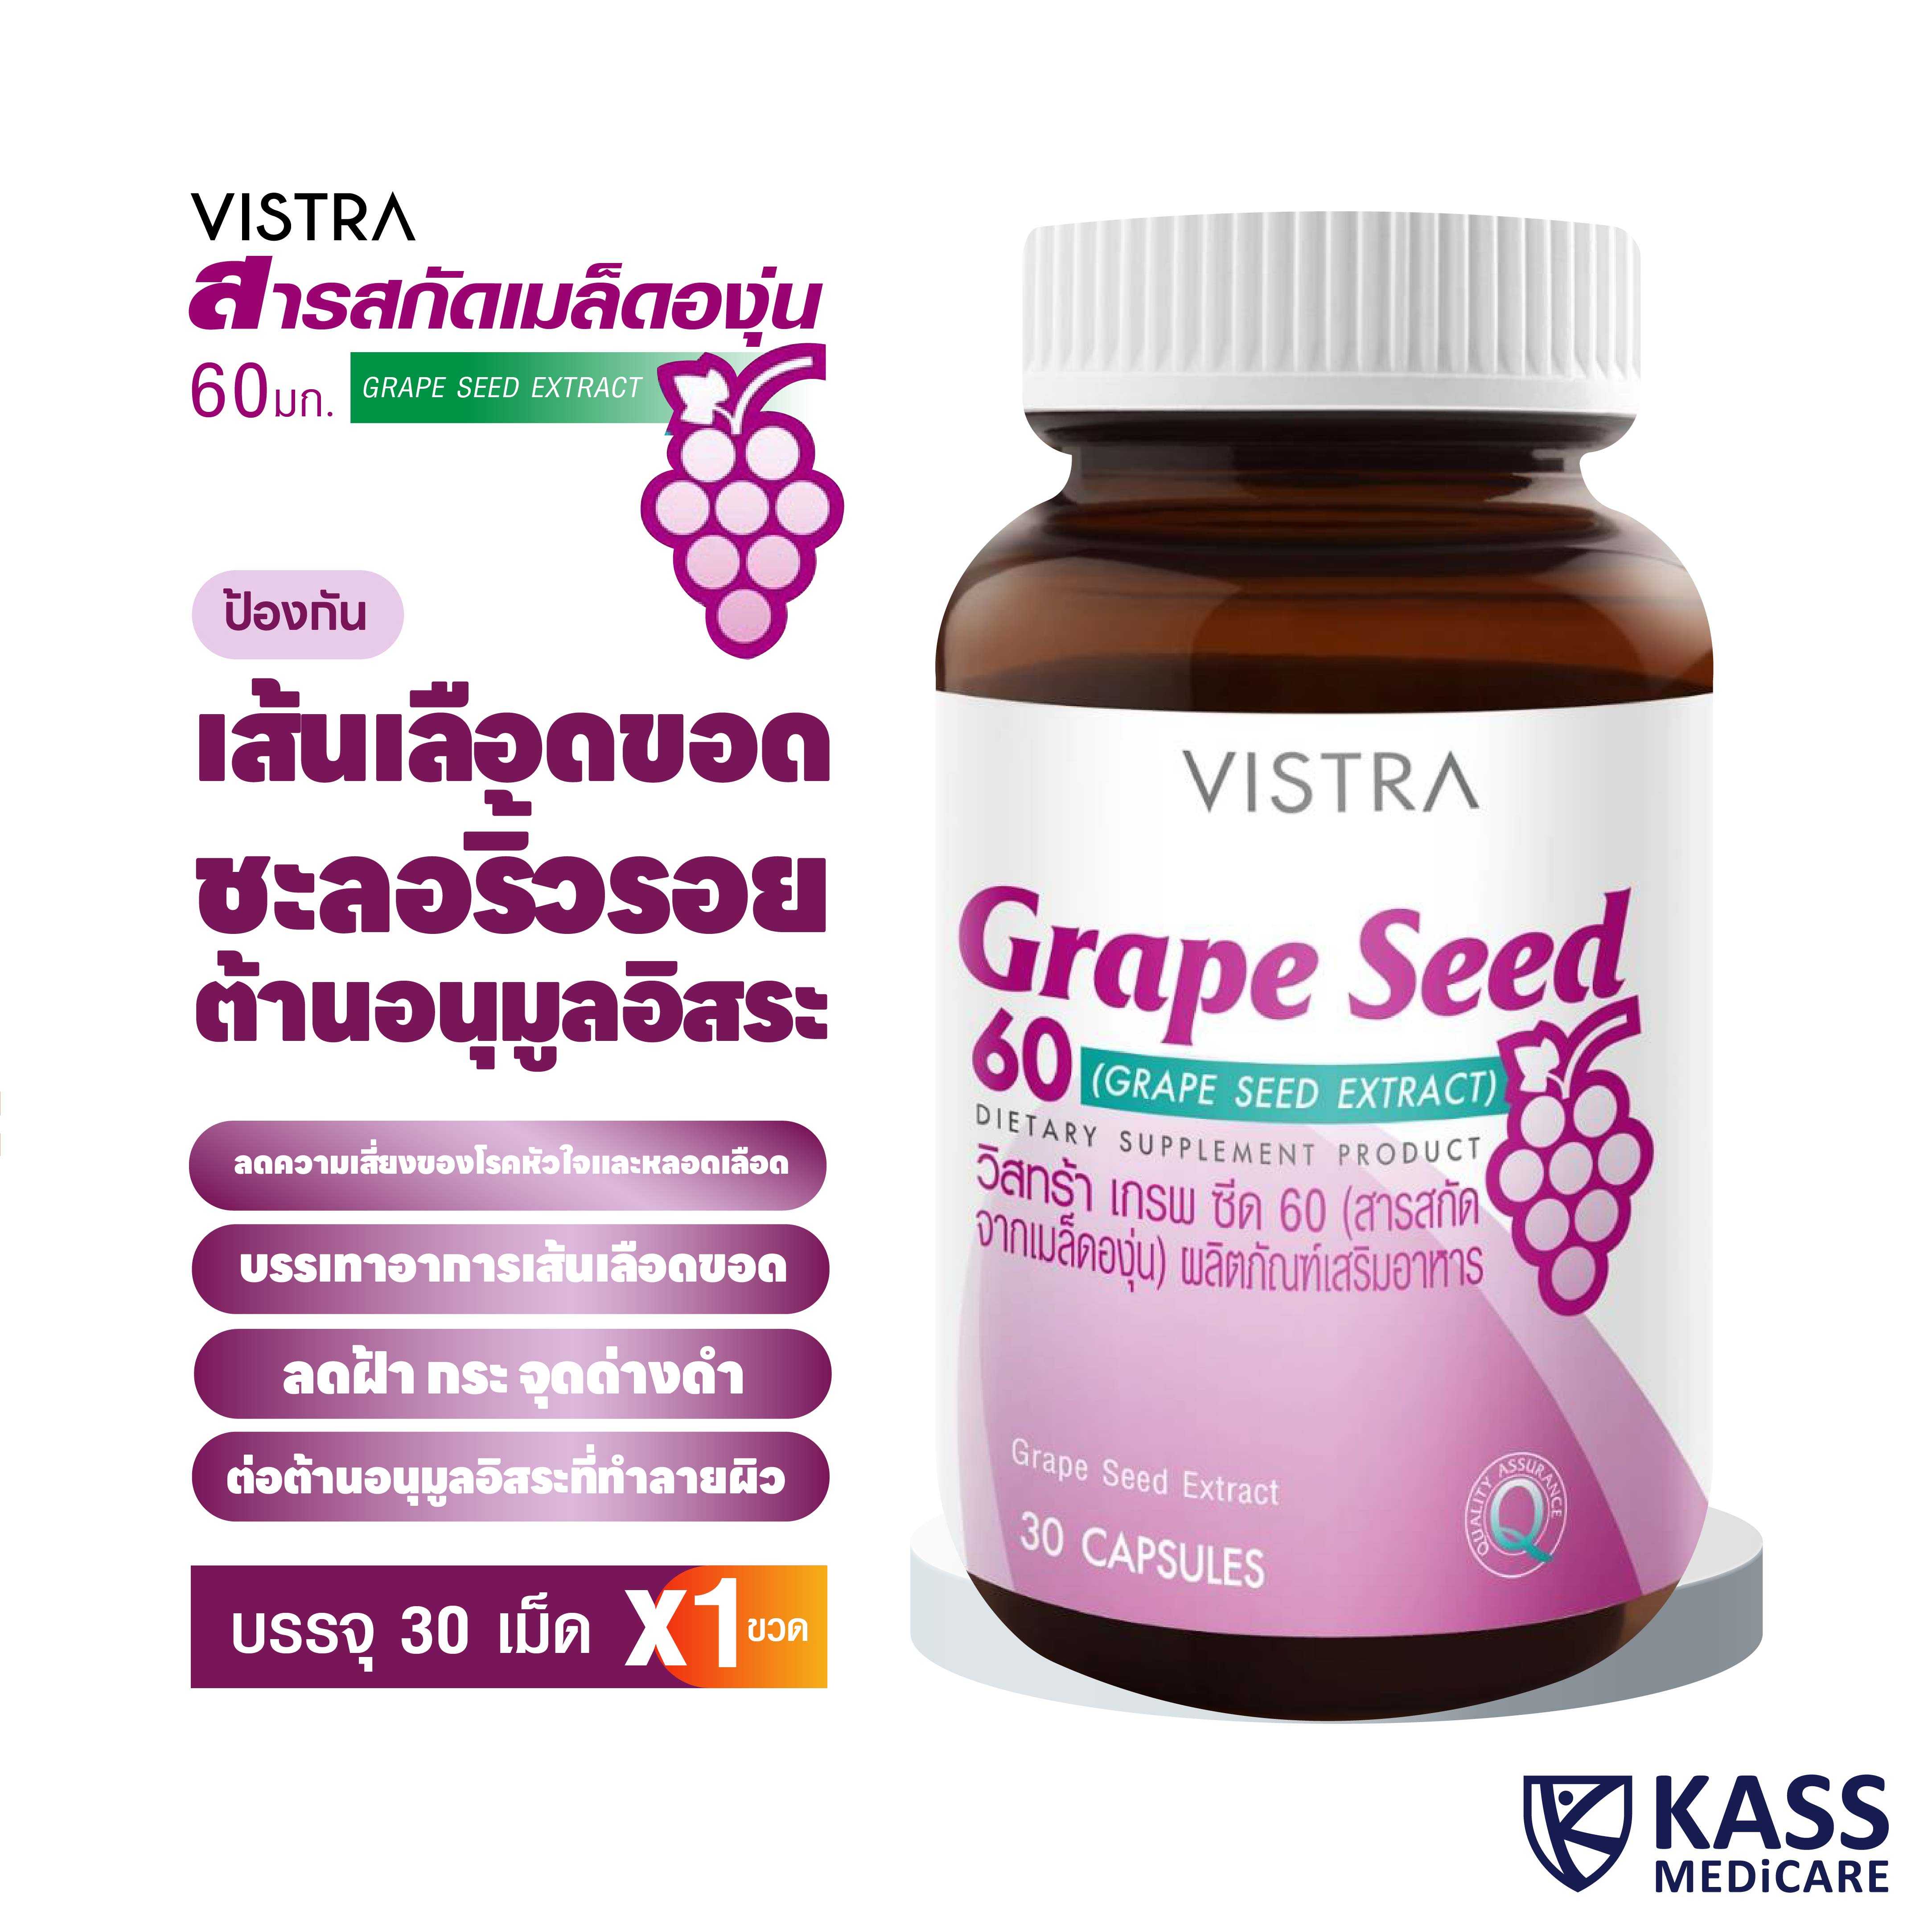 VISTRA Grape Seed 60mg 30 CAPSULES / วิสทร้า เกรพ ซีด 60 (สารสกัดจากเมล็ดองุ่น) ผลิตภัณฑ์เสริมอาหาร